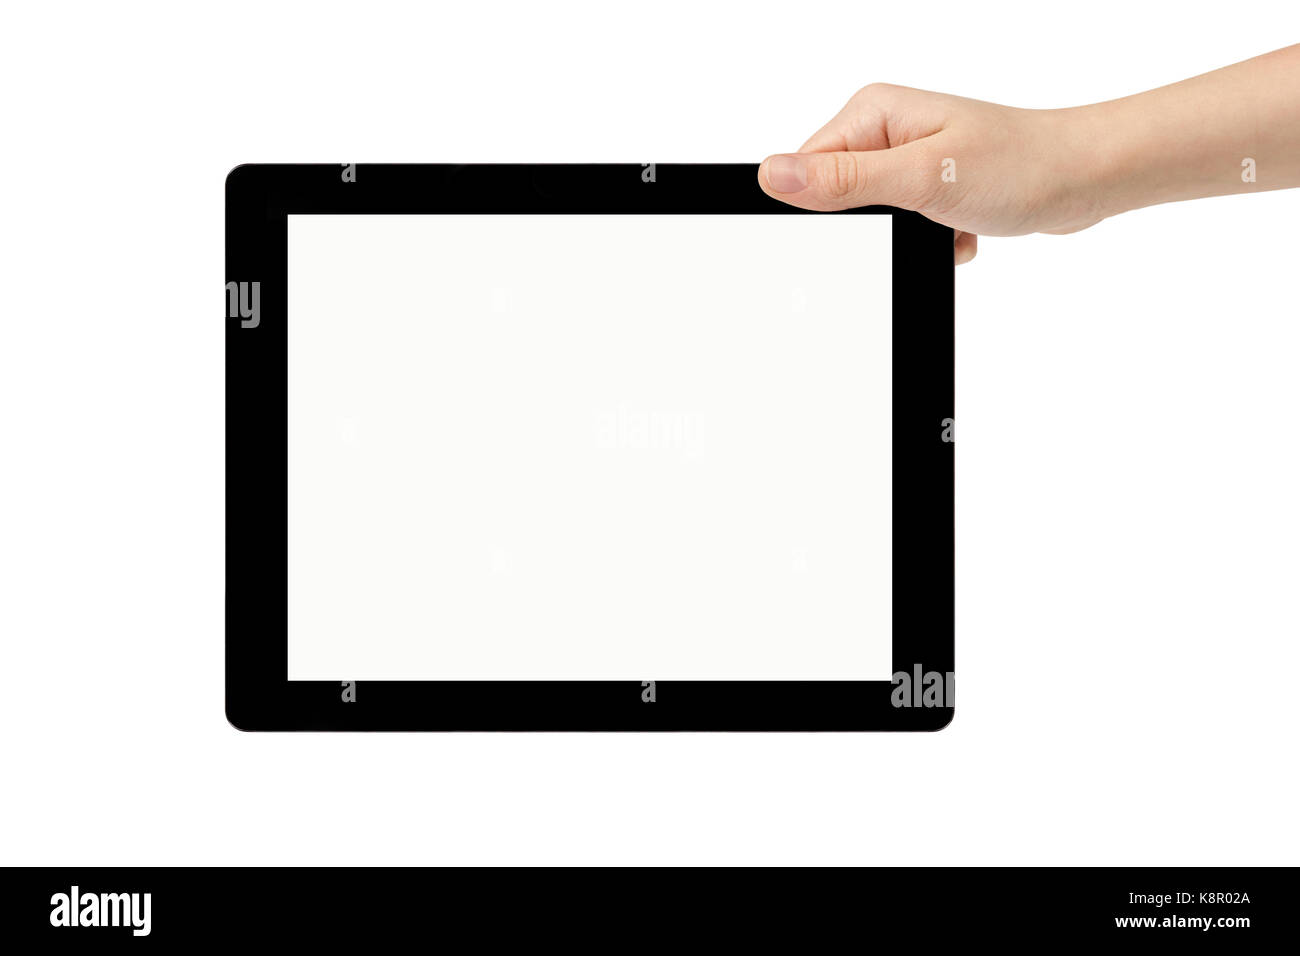 Adolescente femenina mano sujetando tablet pc con pantalla blanca Foto de stock